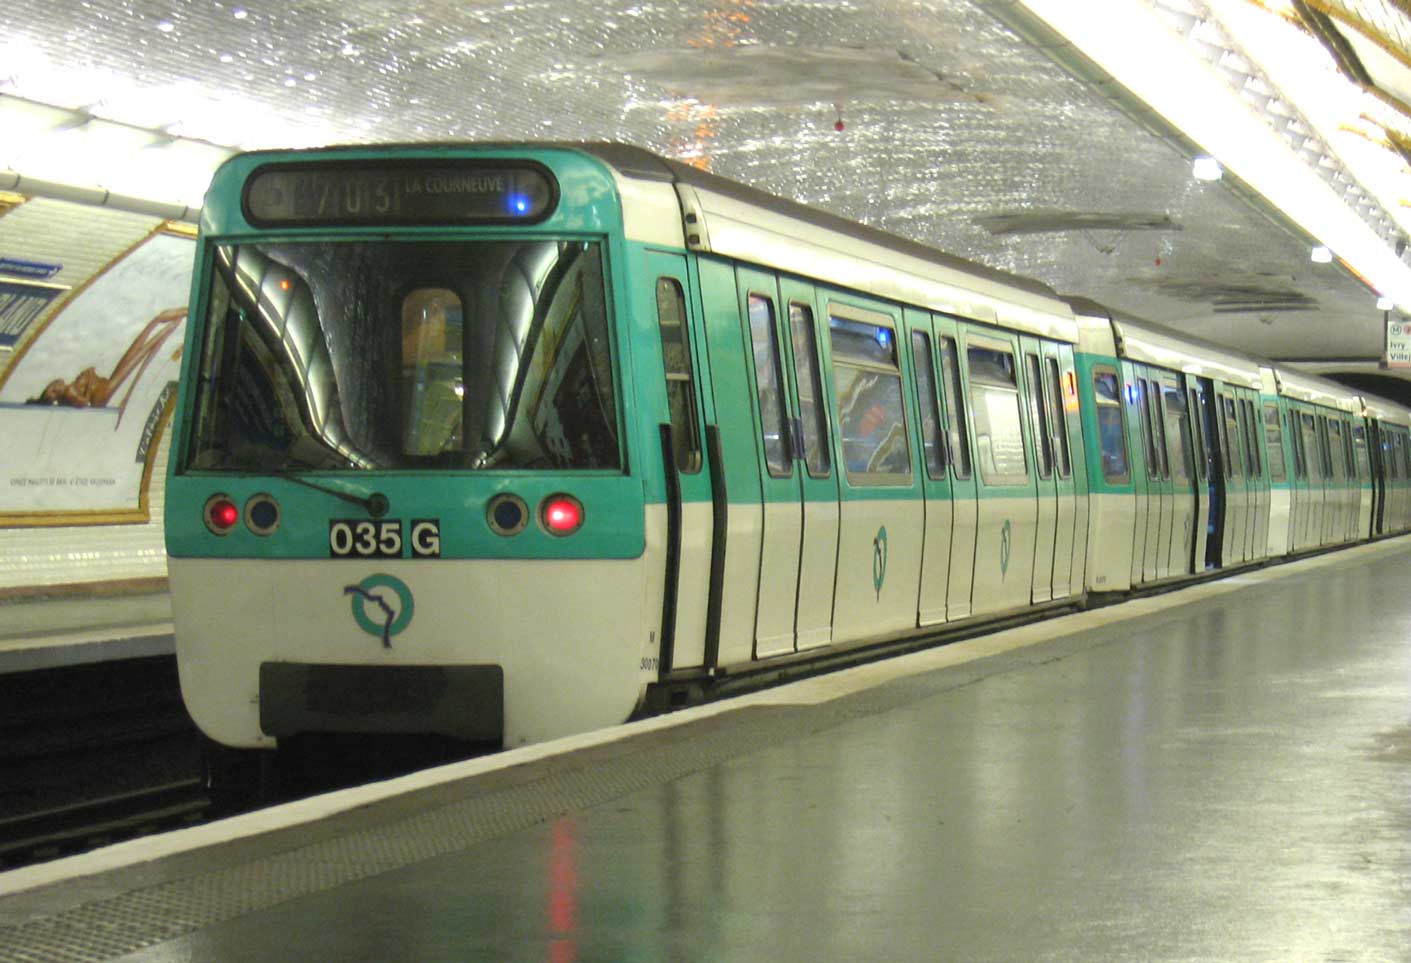 Résultat de recherche d'images pour "métro parisien"